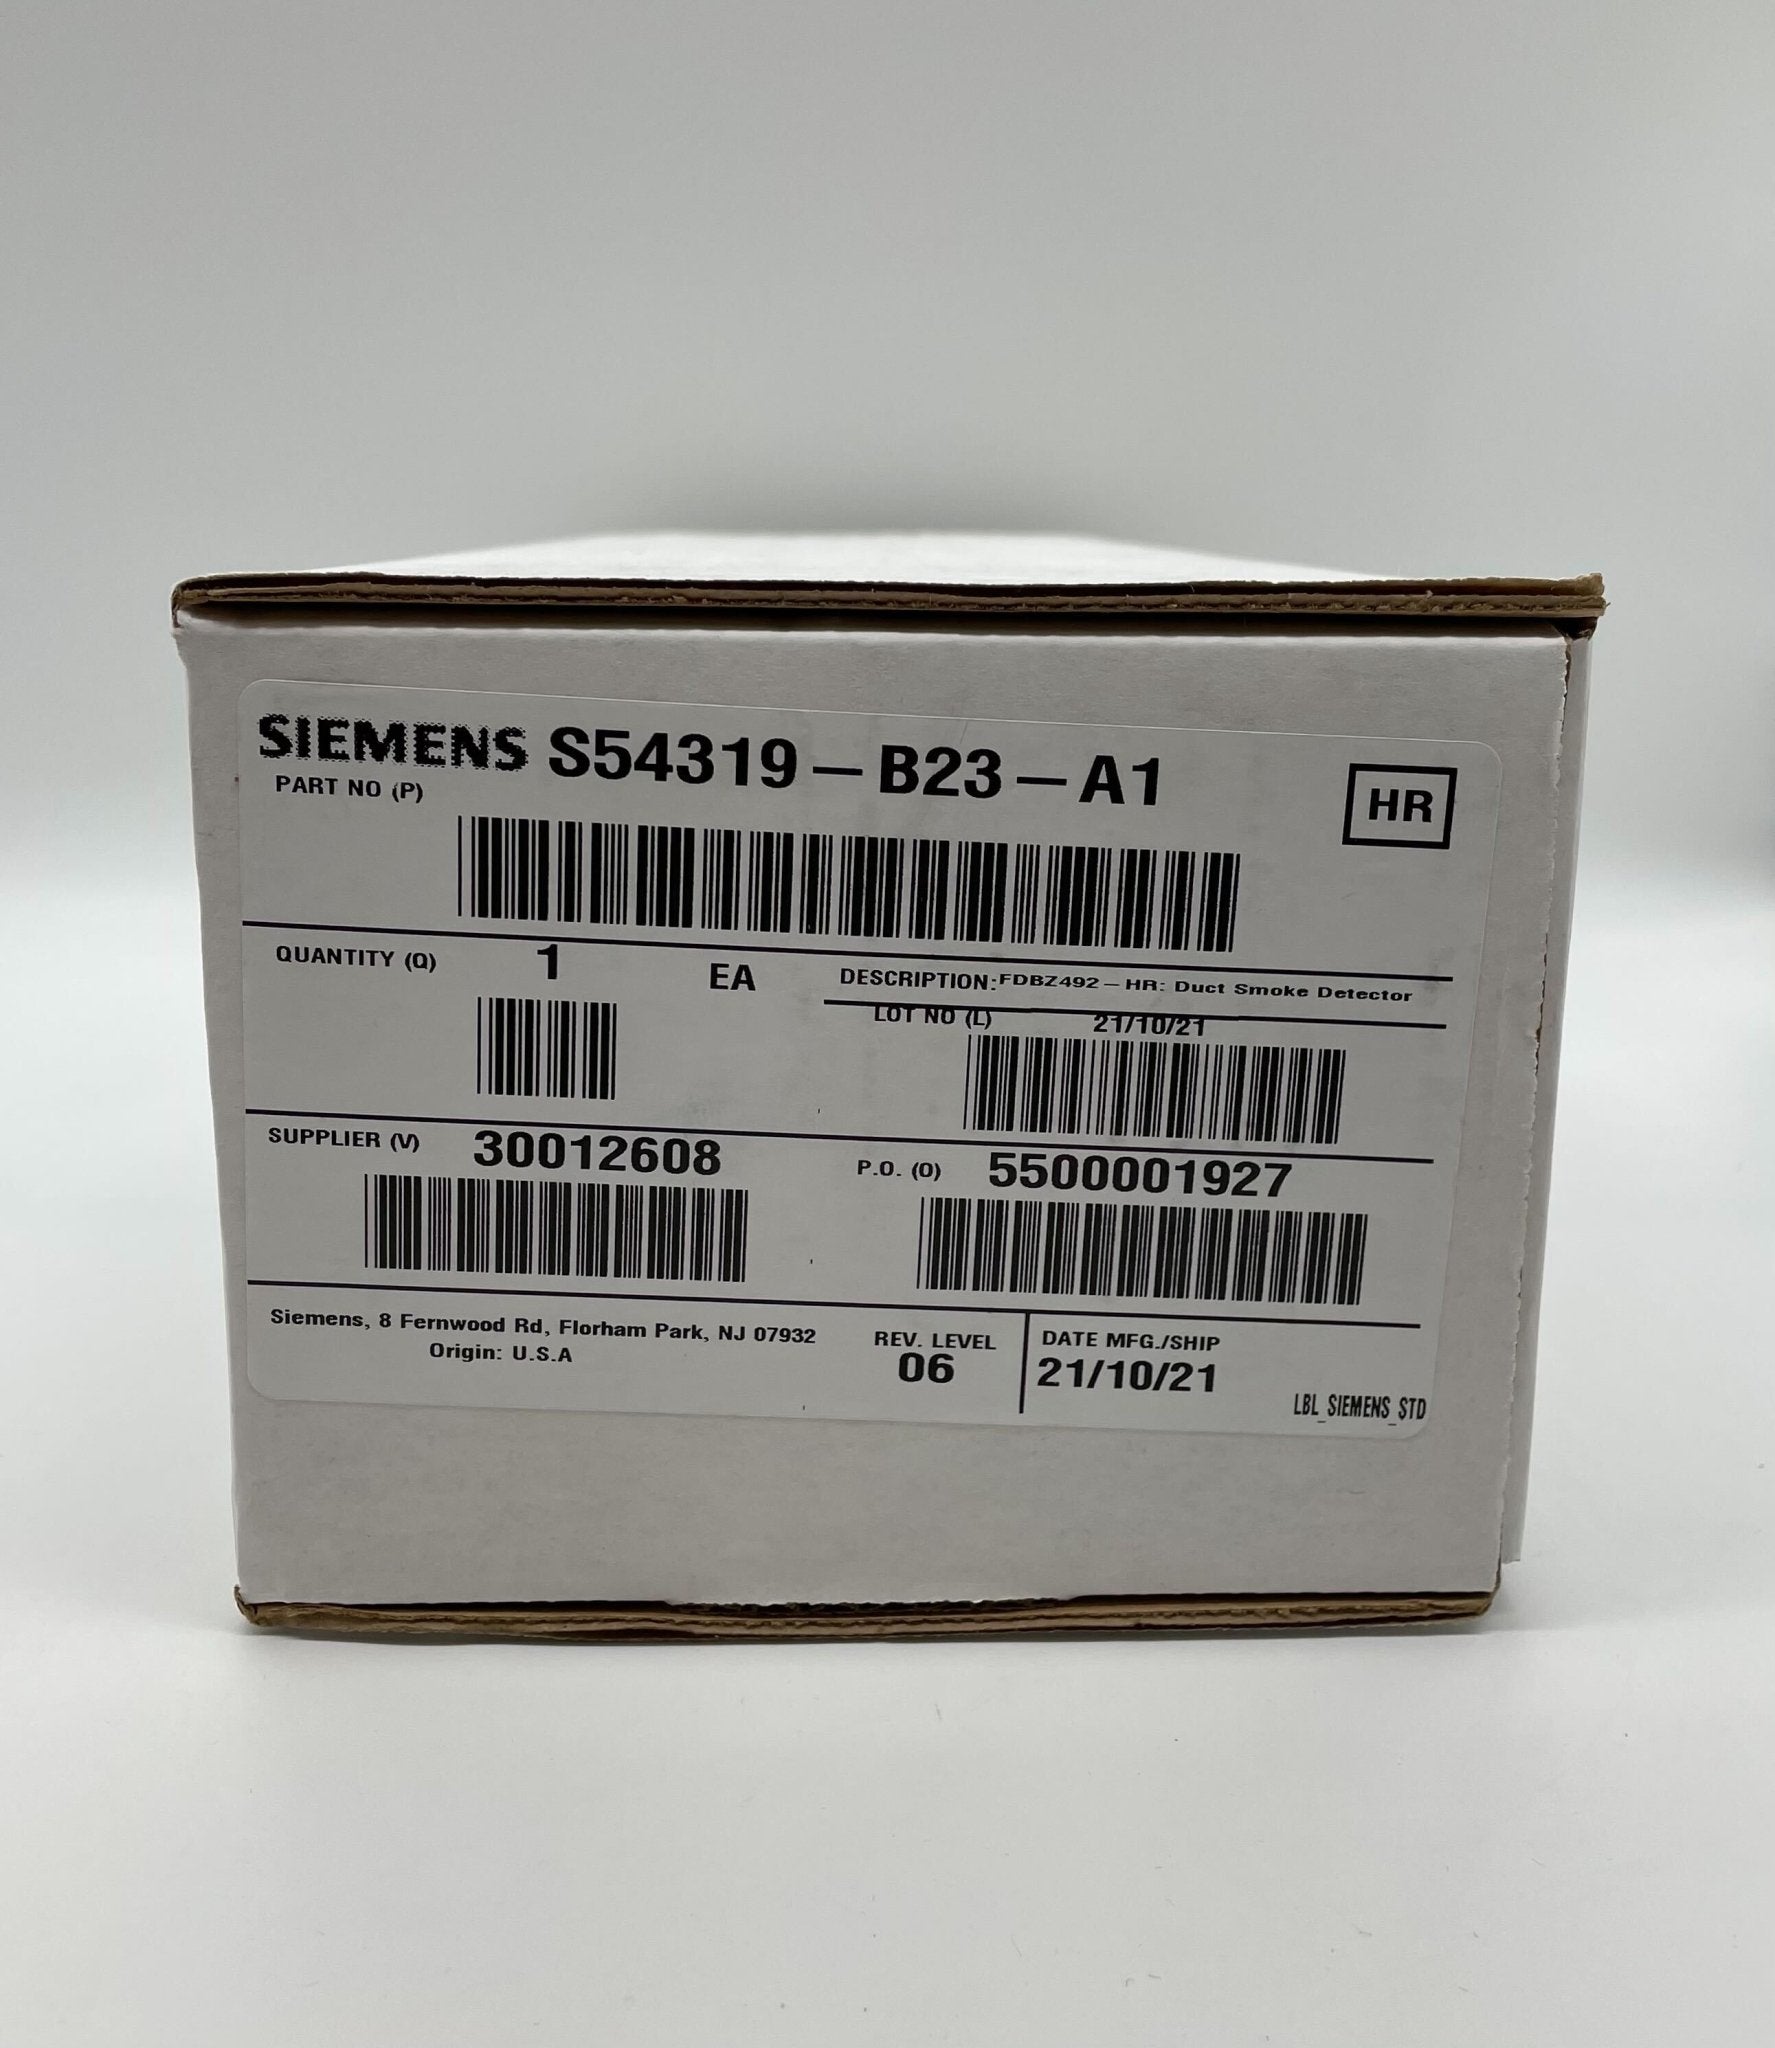 Siemens FDBZ492-HR - The Fire Alarm Supplier